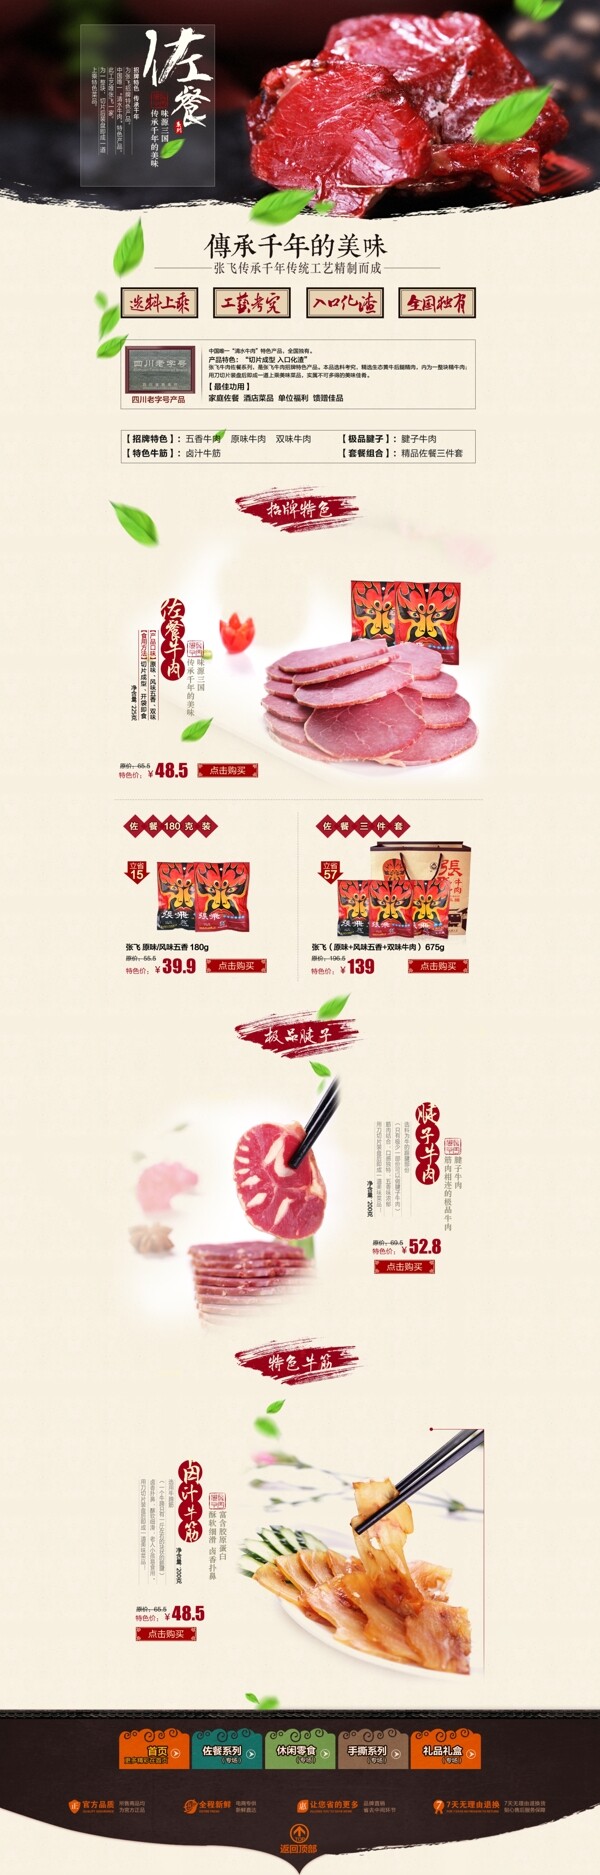 中华美食淘宝店铺首页模板图片